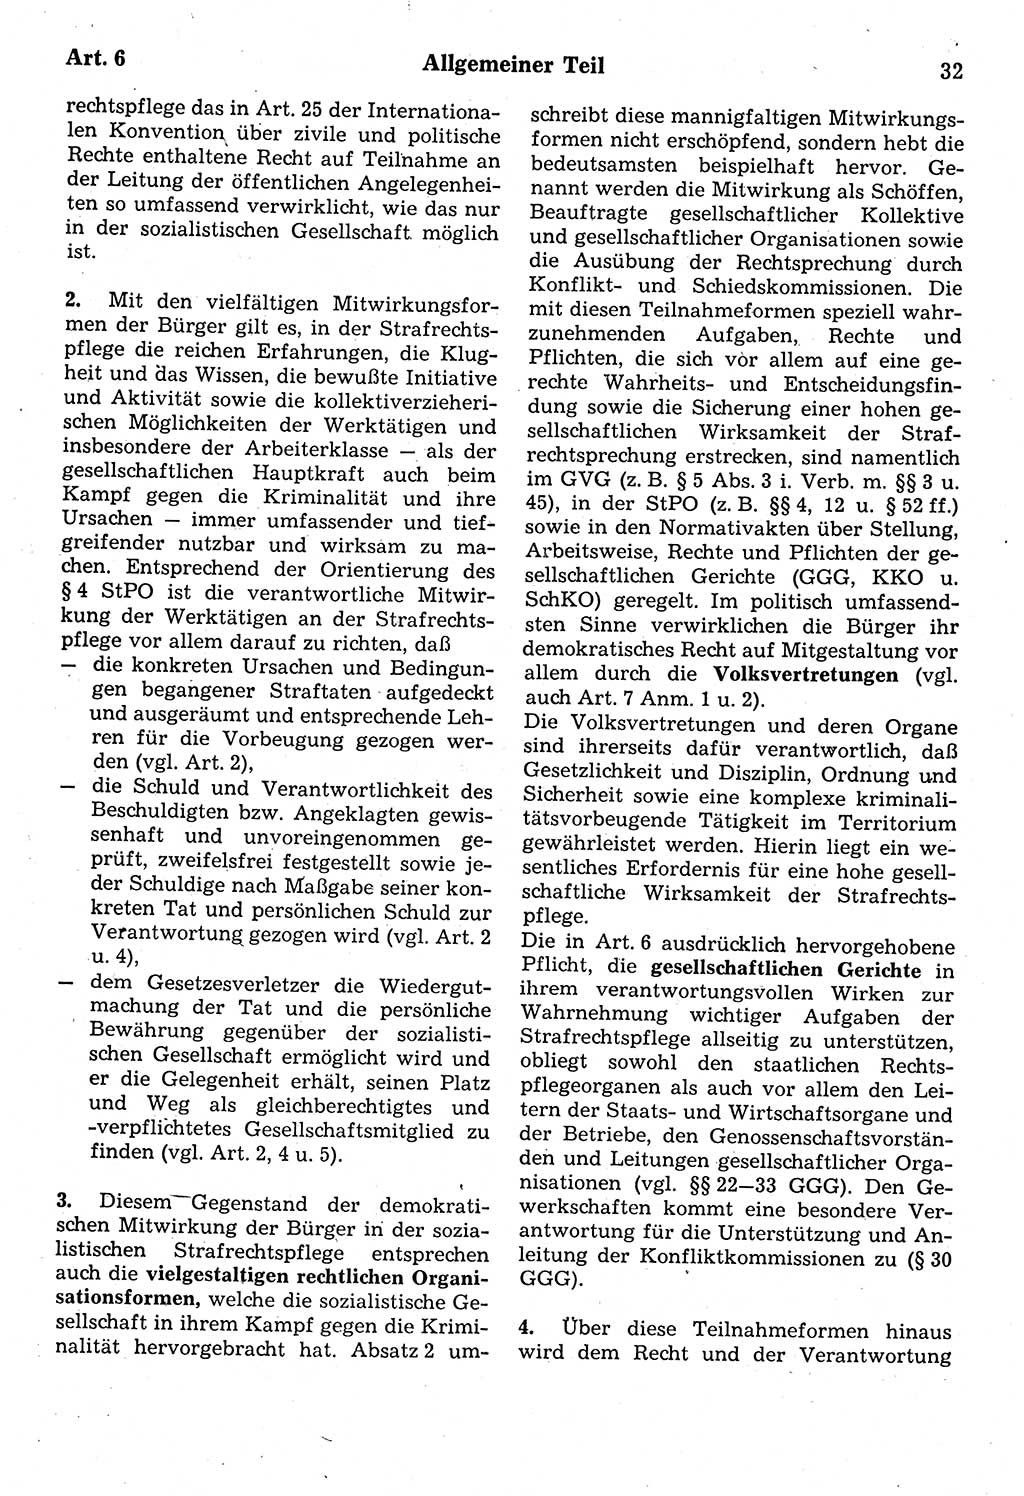 Strafrecht der Deutschen Demokratischen Republik (DDR), Kommentar zum Strafgesetzbuch (StGB) 1987, Seite 32 (Strafr. DDR Komm. StGB 1987, S. 32)